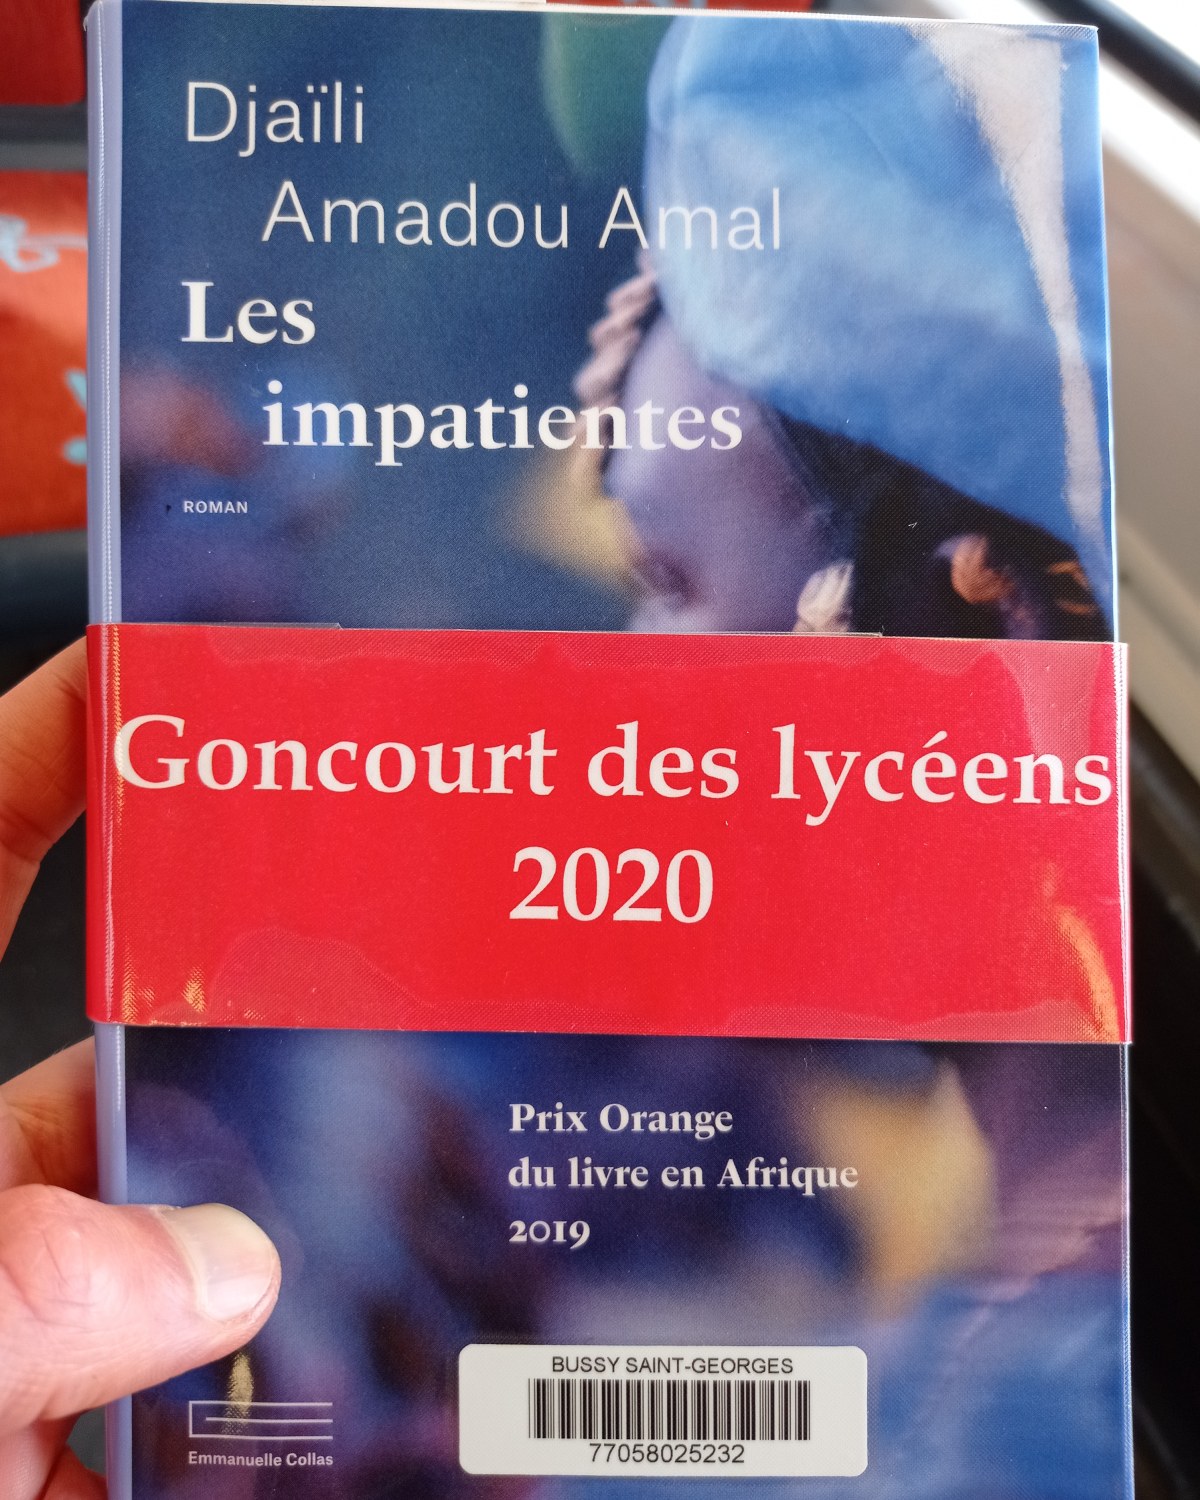 Les impatientes / Djaïli Amadou Amal